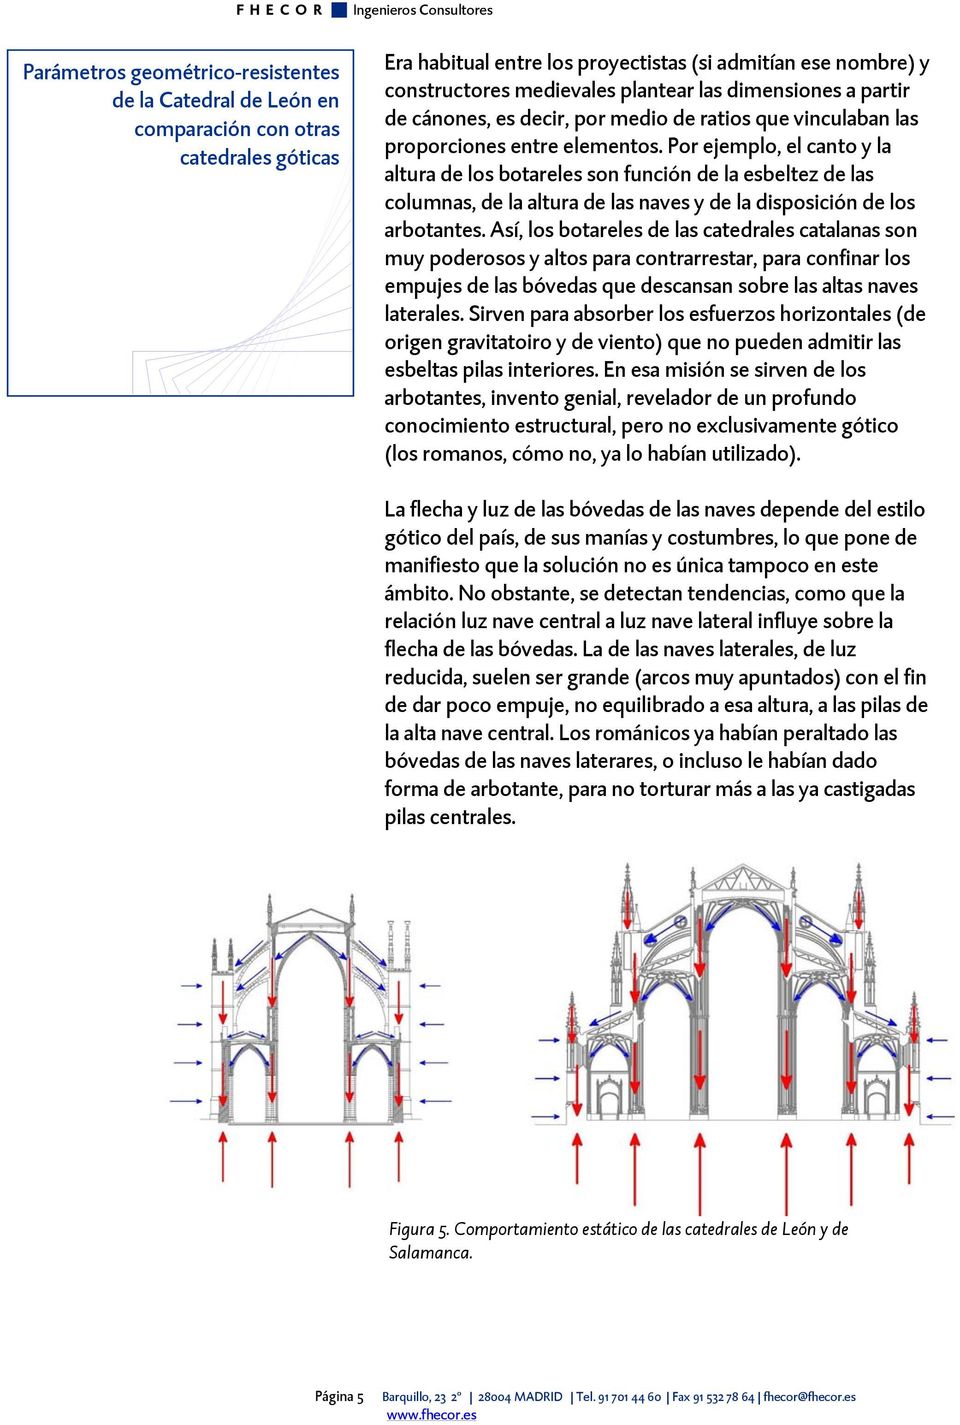 Así, los botareles de las catedrales catalanas son muy poderosos y altos para contrarrestar, para confinar los empujes de las bóvedas que descansan sobre las altas naves laterales.